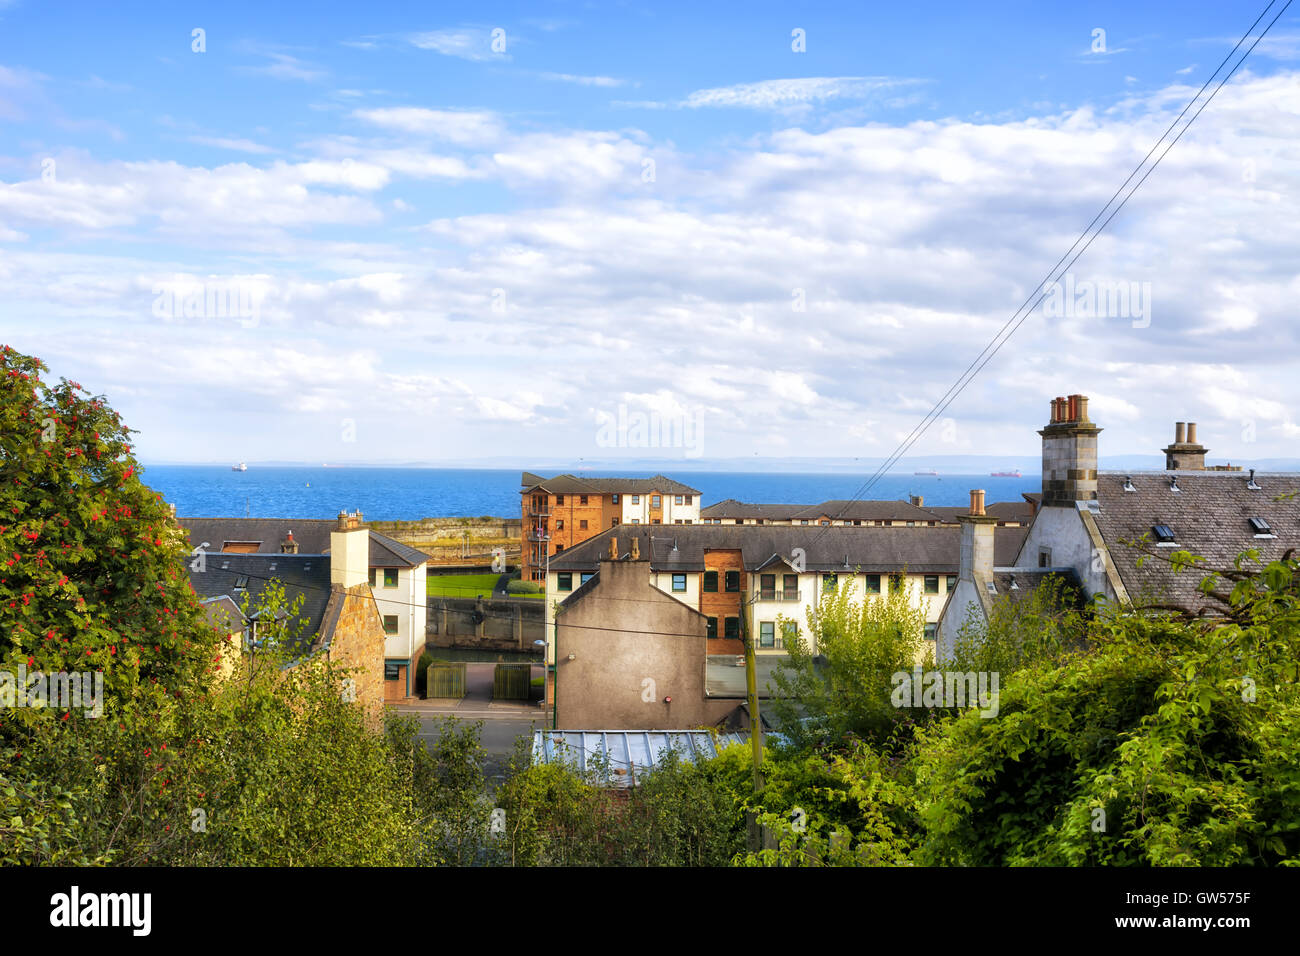 Vue sur les toits et la mer dans la ville écossaise de Kirkcaldy Banque D'Images